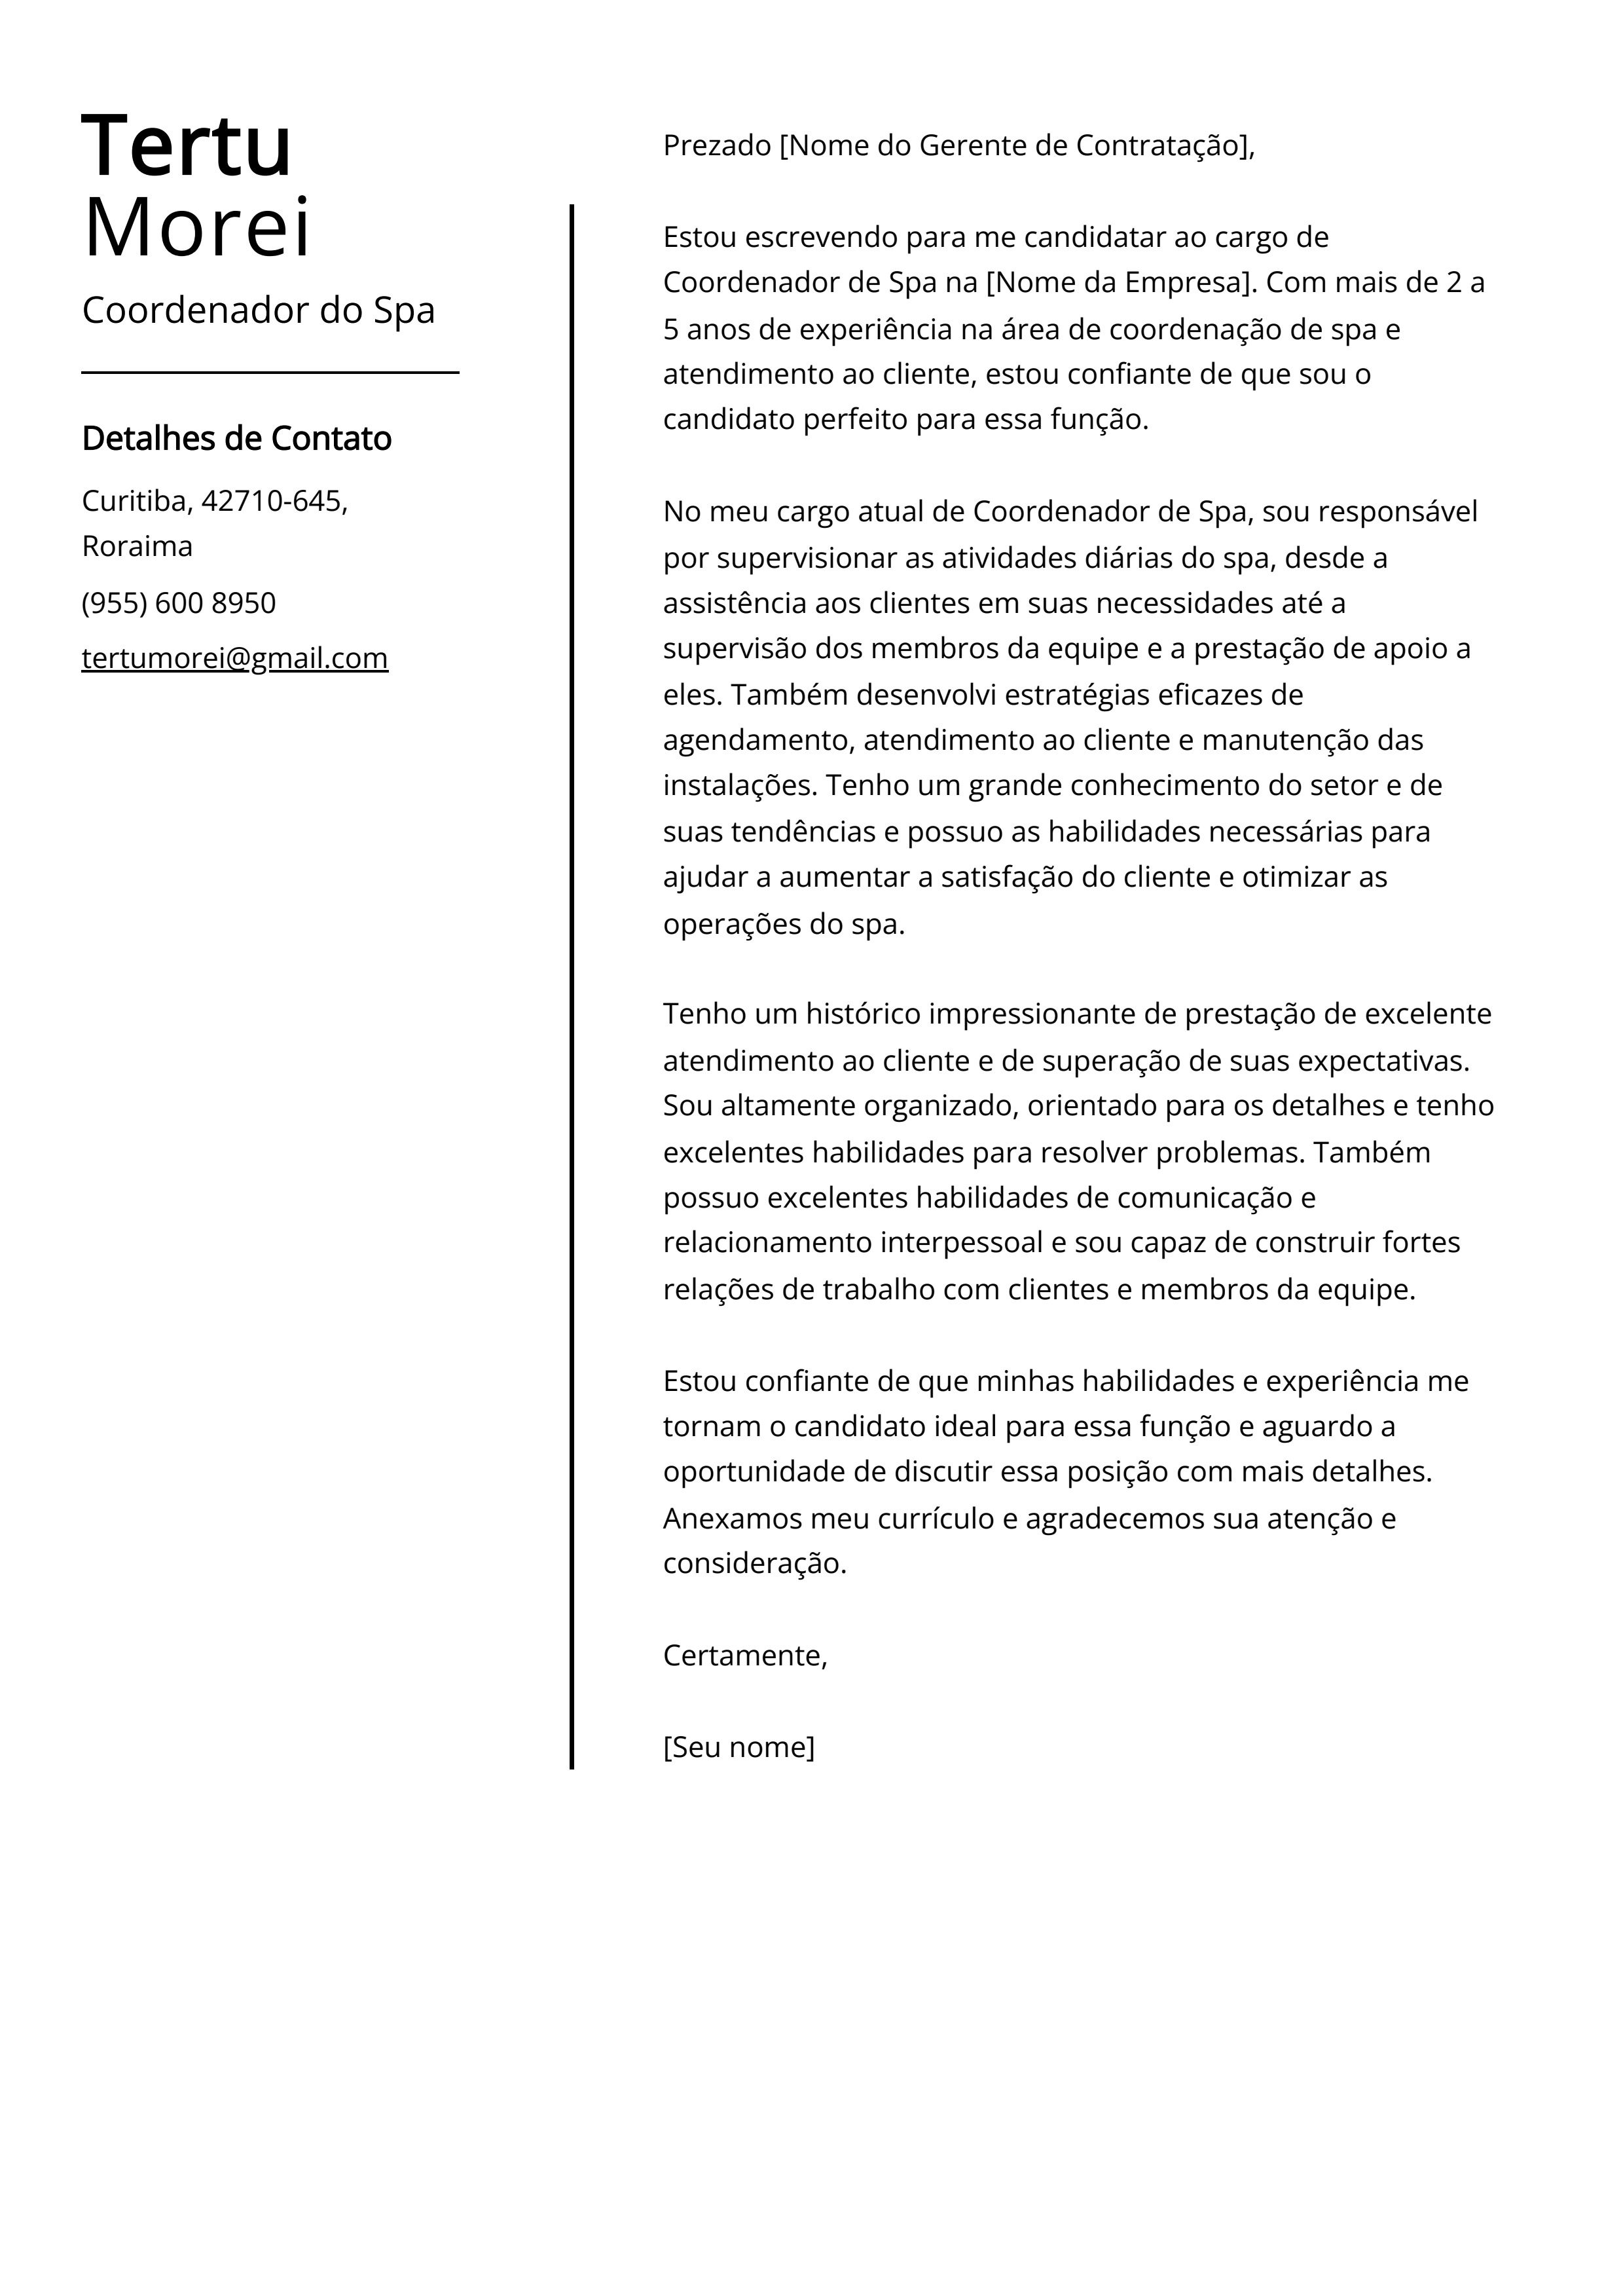 Exemplo de carta de apresentação do Coordenador do Spa